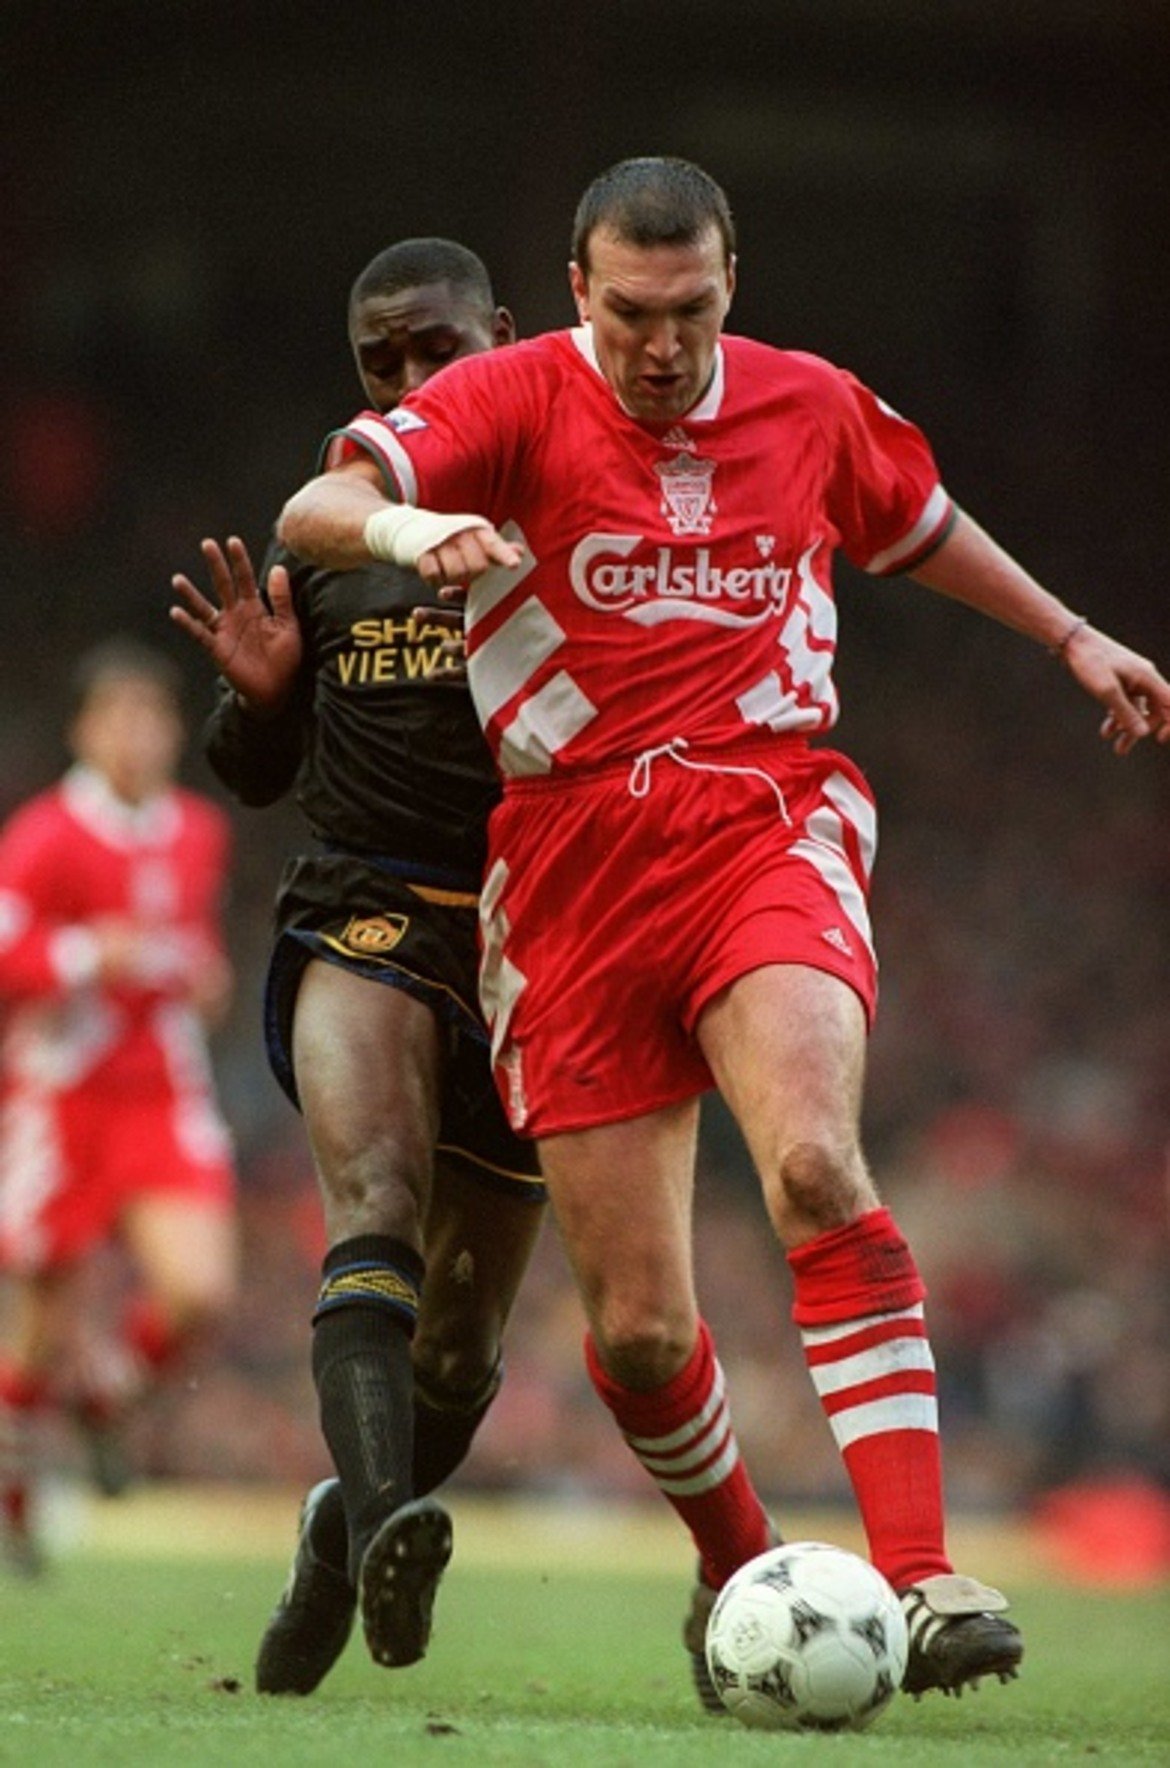 Една от най-бруталните се разиграва през 1996 година в мач на резервите между Ливърпул и Юнайтед. Брутално влизане на Бръснача чупи двата крака на една от звездите на „червените дяволи“ – Анди Коул.

